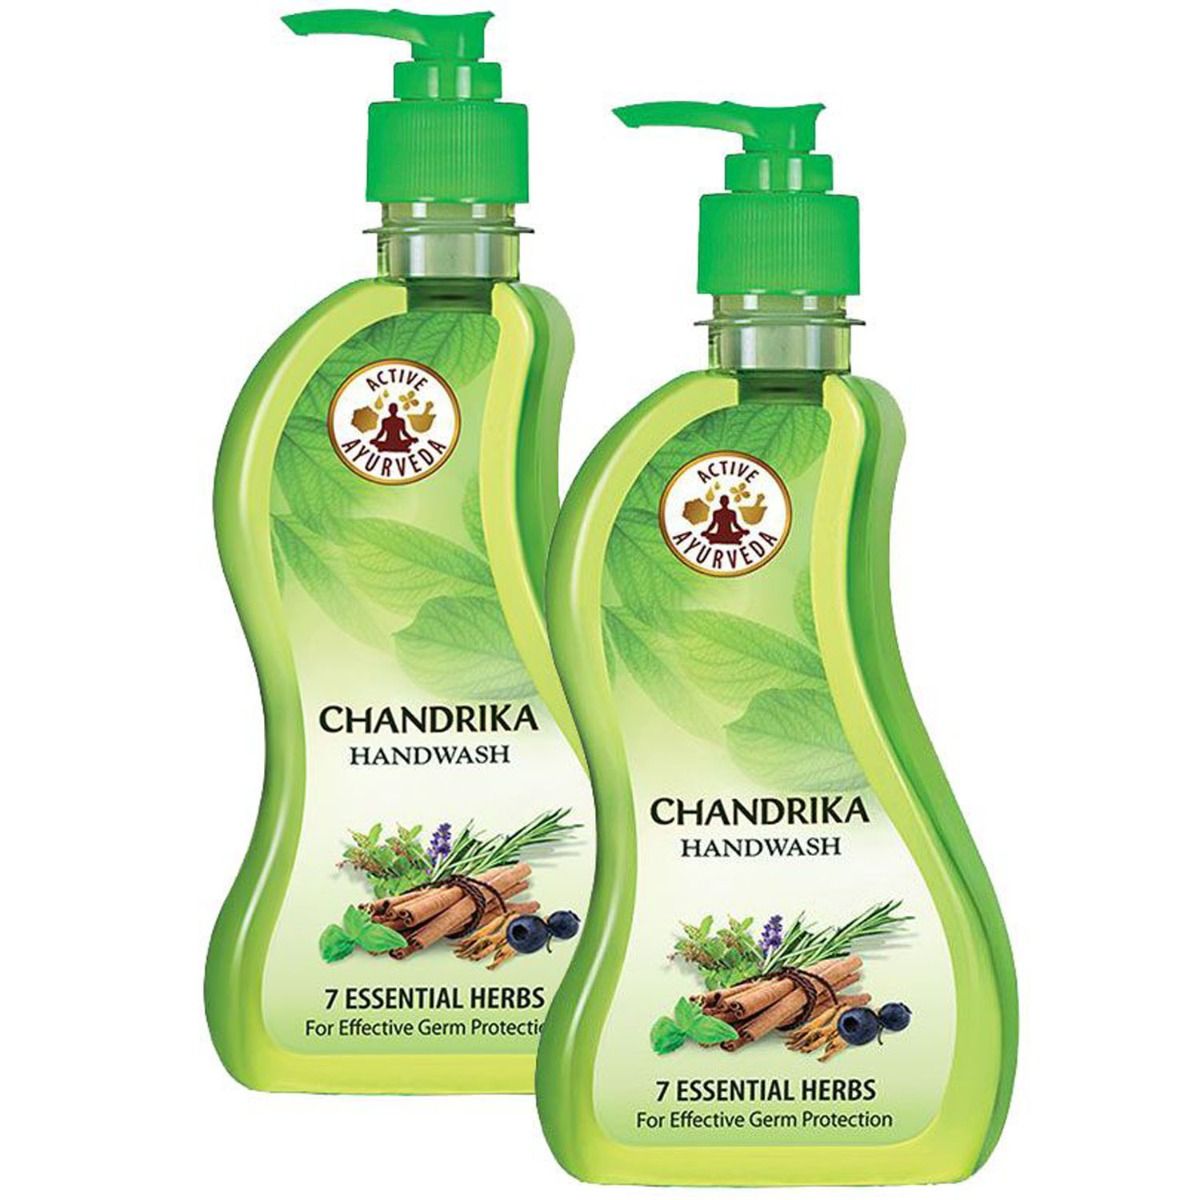 Buy Chandrika Handwash, 430 ml (2 x 215 ml) Online